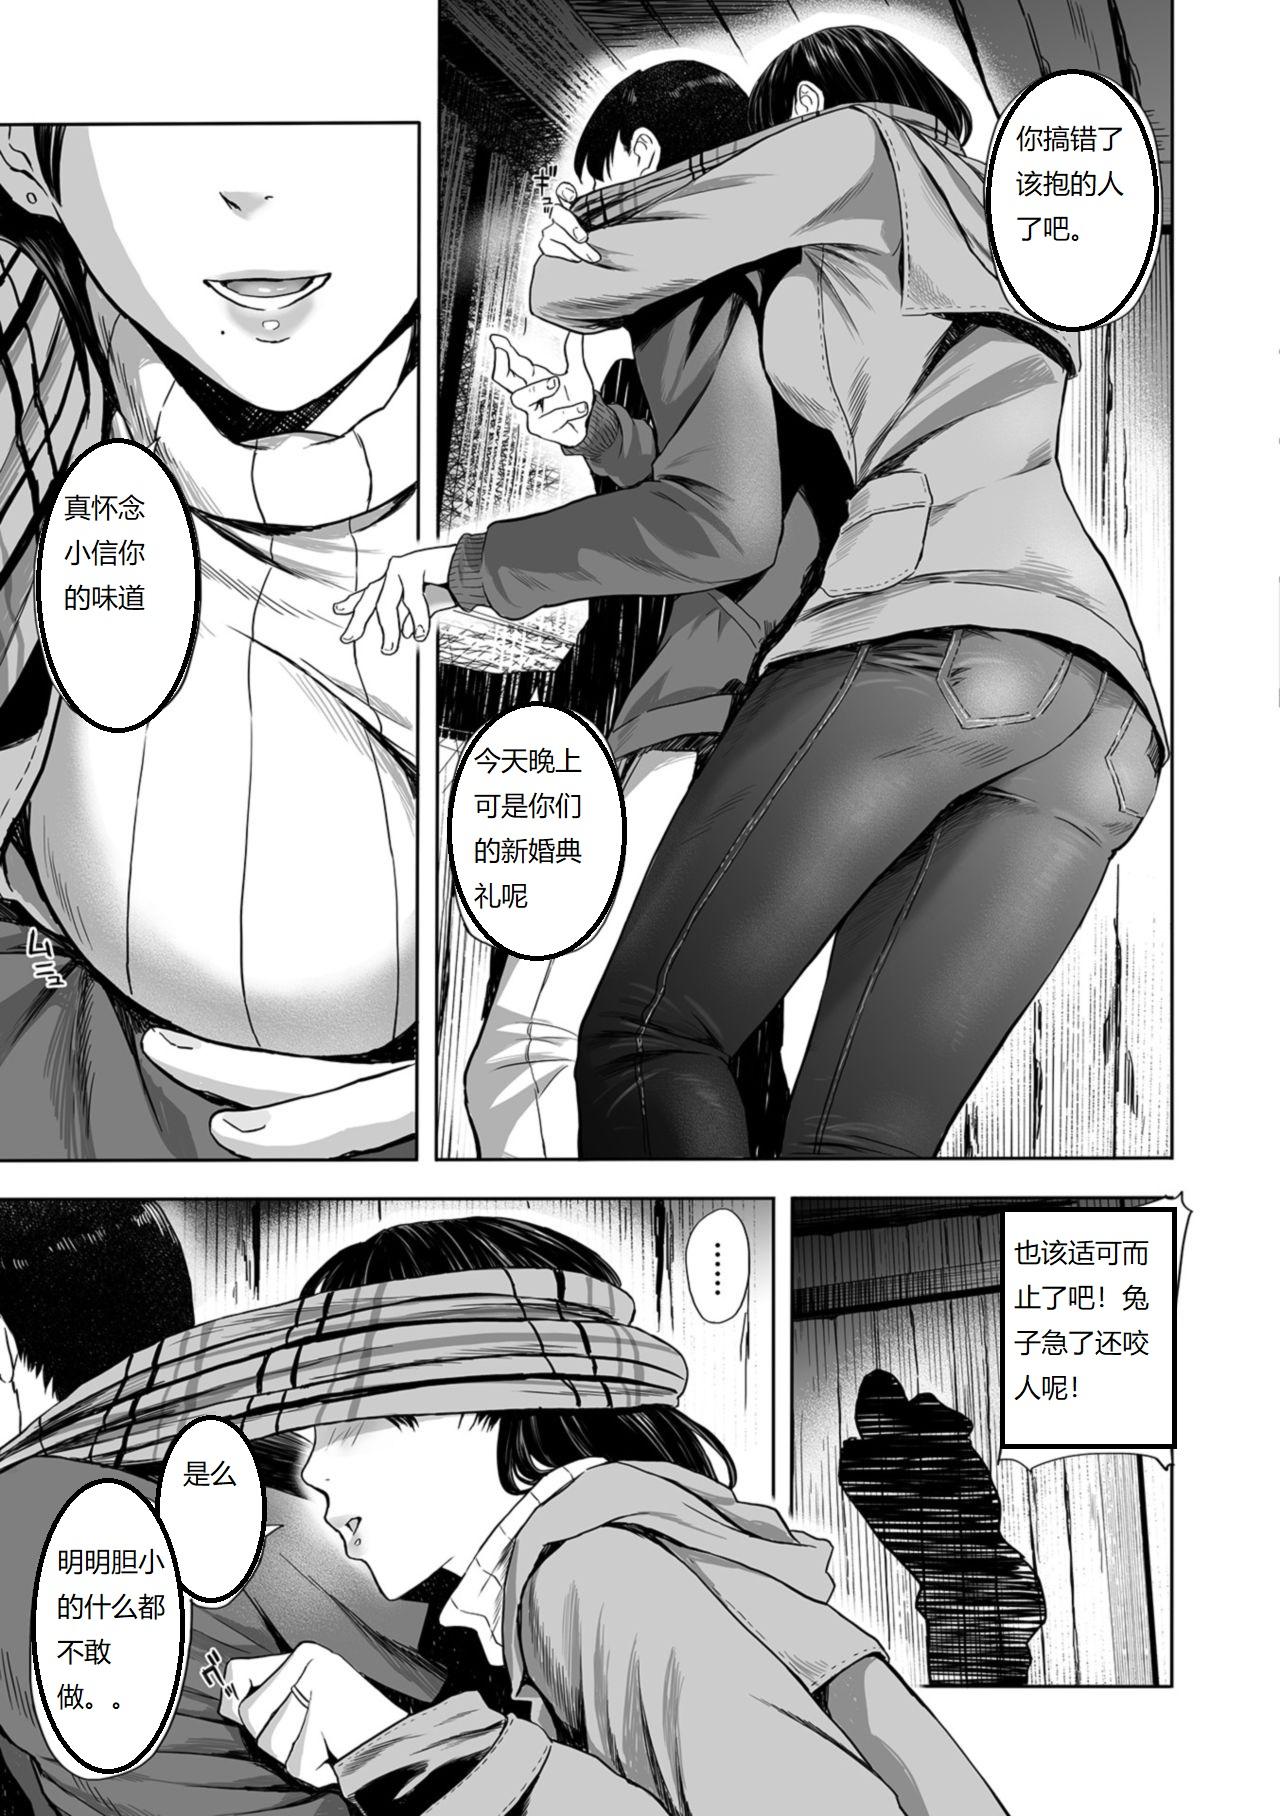 Hiddencam Yuki no Yoru, Katawara no Hitozuma wa Atsui Toiki o Furuwasete... Corrida - Page 3